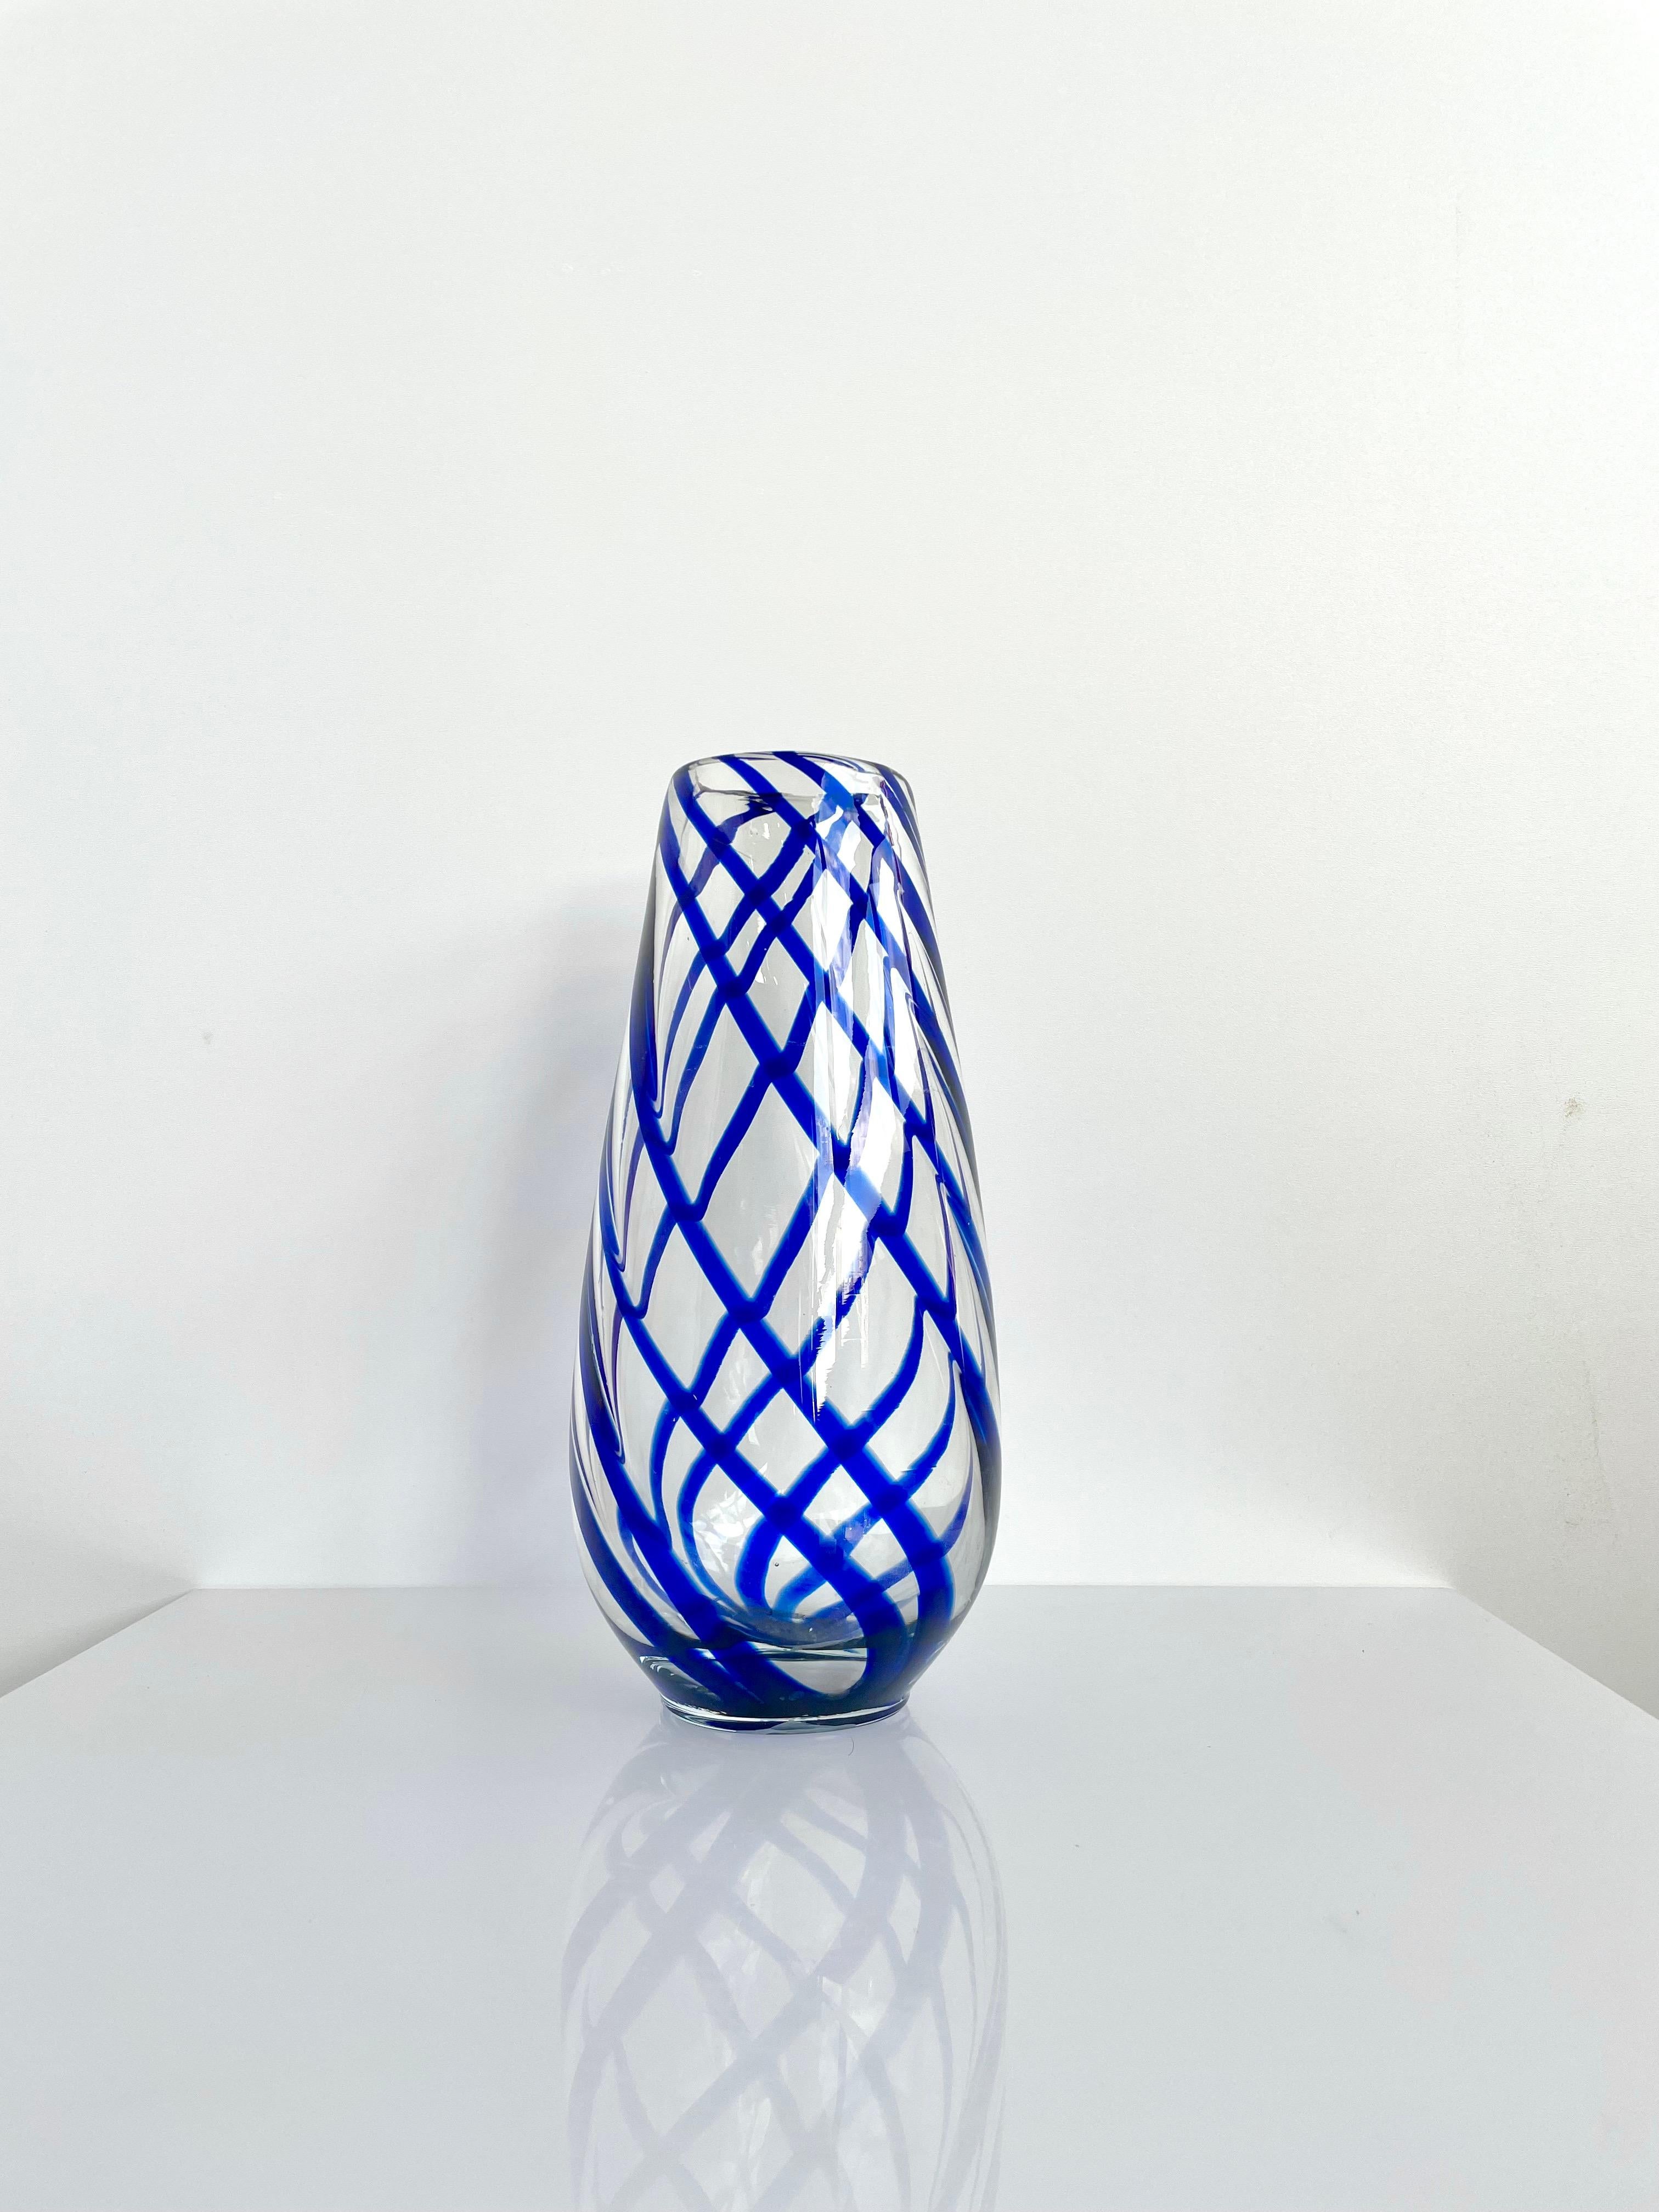 Vase aus Murano-Glas aus den 1960er Jahren. Auffällige blaue Strudel in klarem Glas (handgefertigt). Zur Verwendung als Dekorationsartikel oder als funktionales Gefäß für Blumen oder andere dekorative Elemente. 